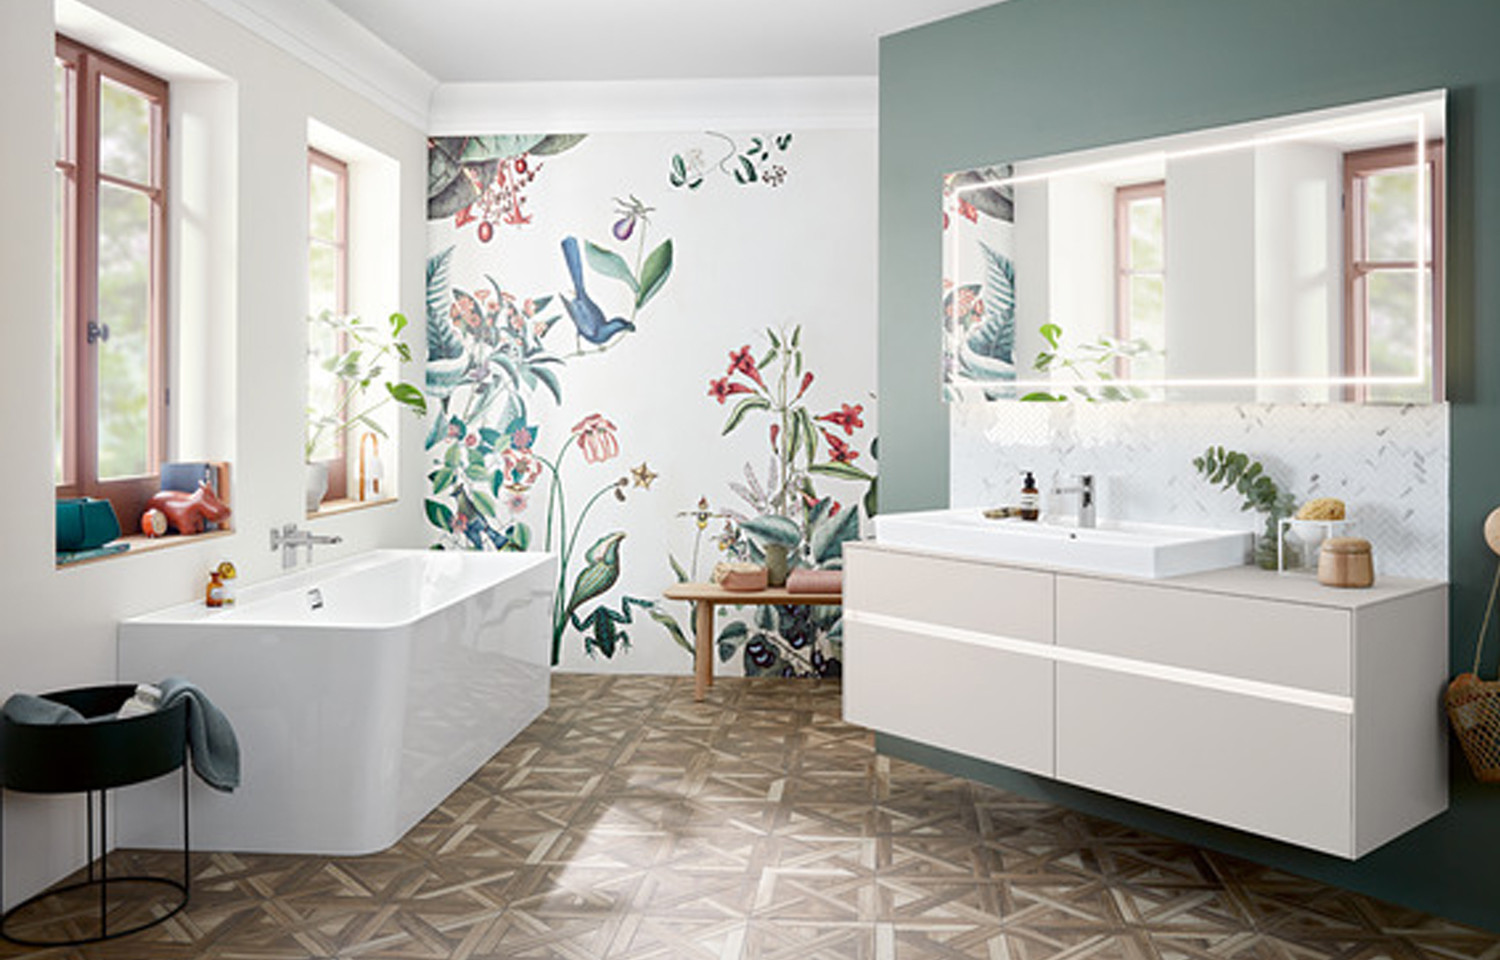 Концептуальные особенности дизайна интерьера ванной комнаты